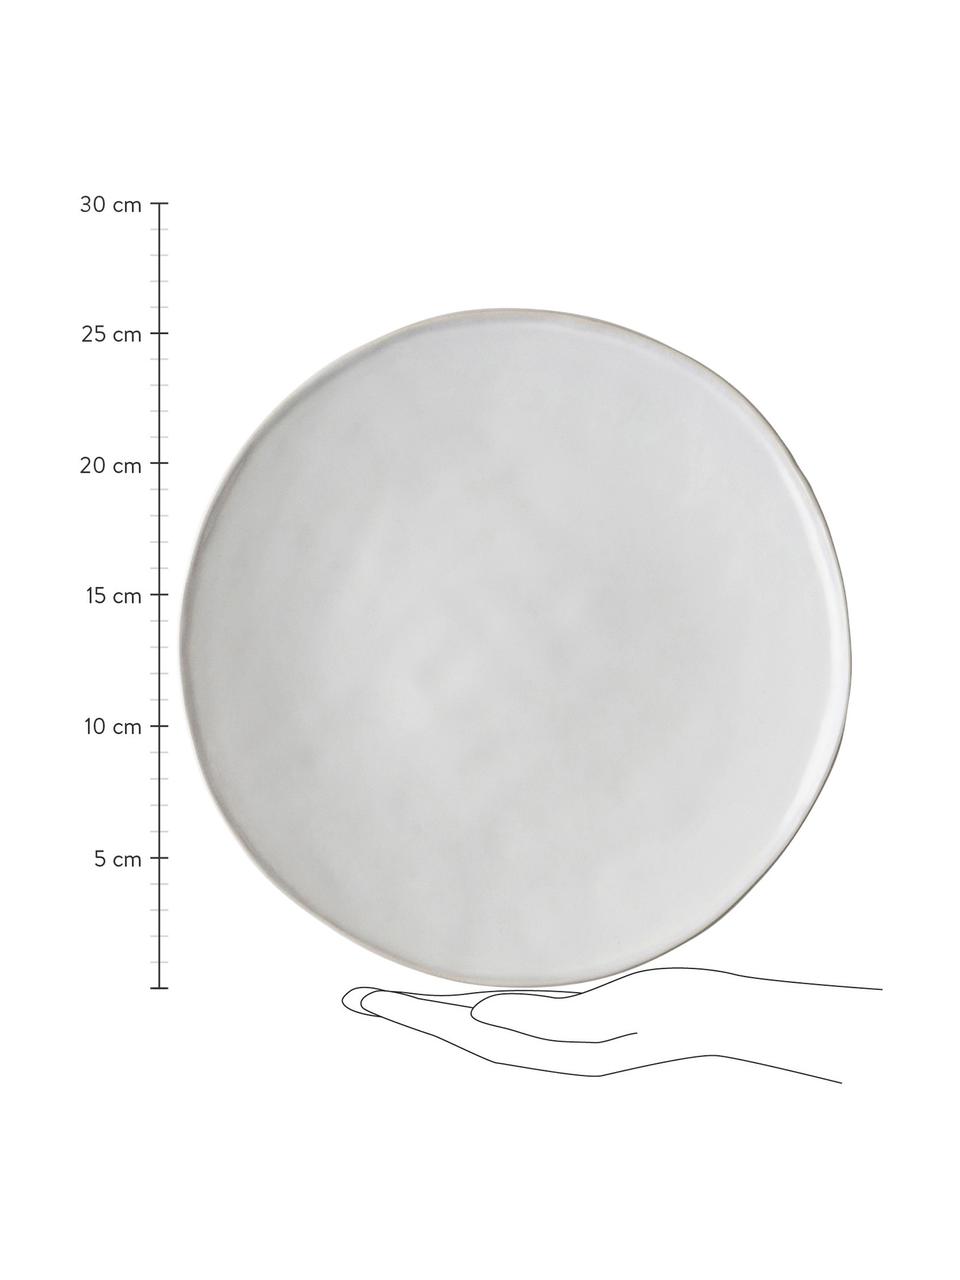 Dinerbord White Organic, 4 stuks, Keramiek, Wit, Ø 27 x H 3 cm